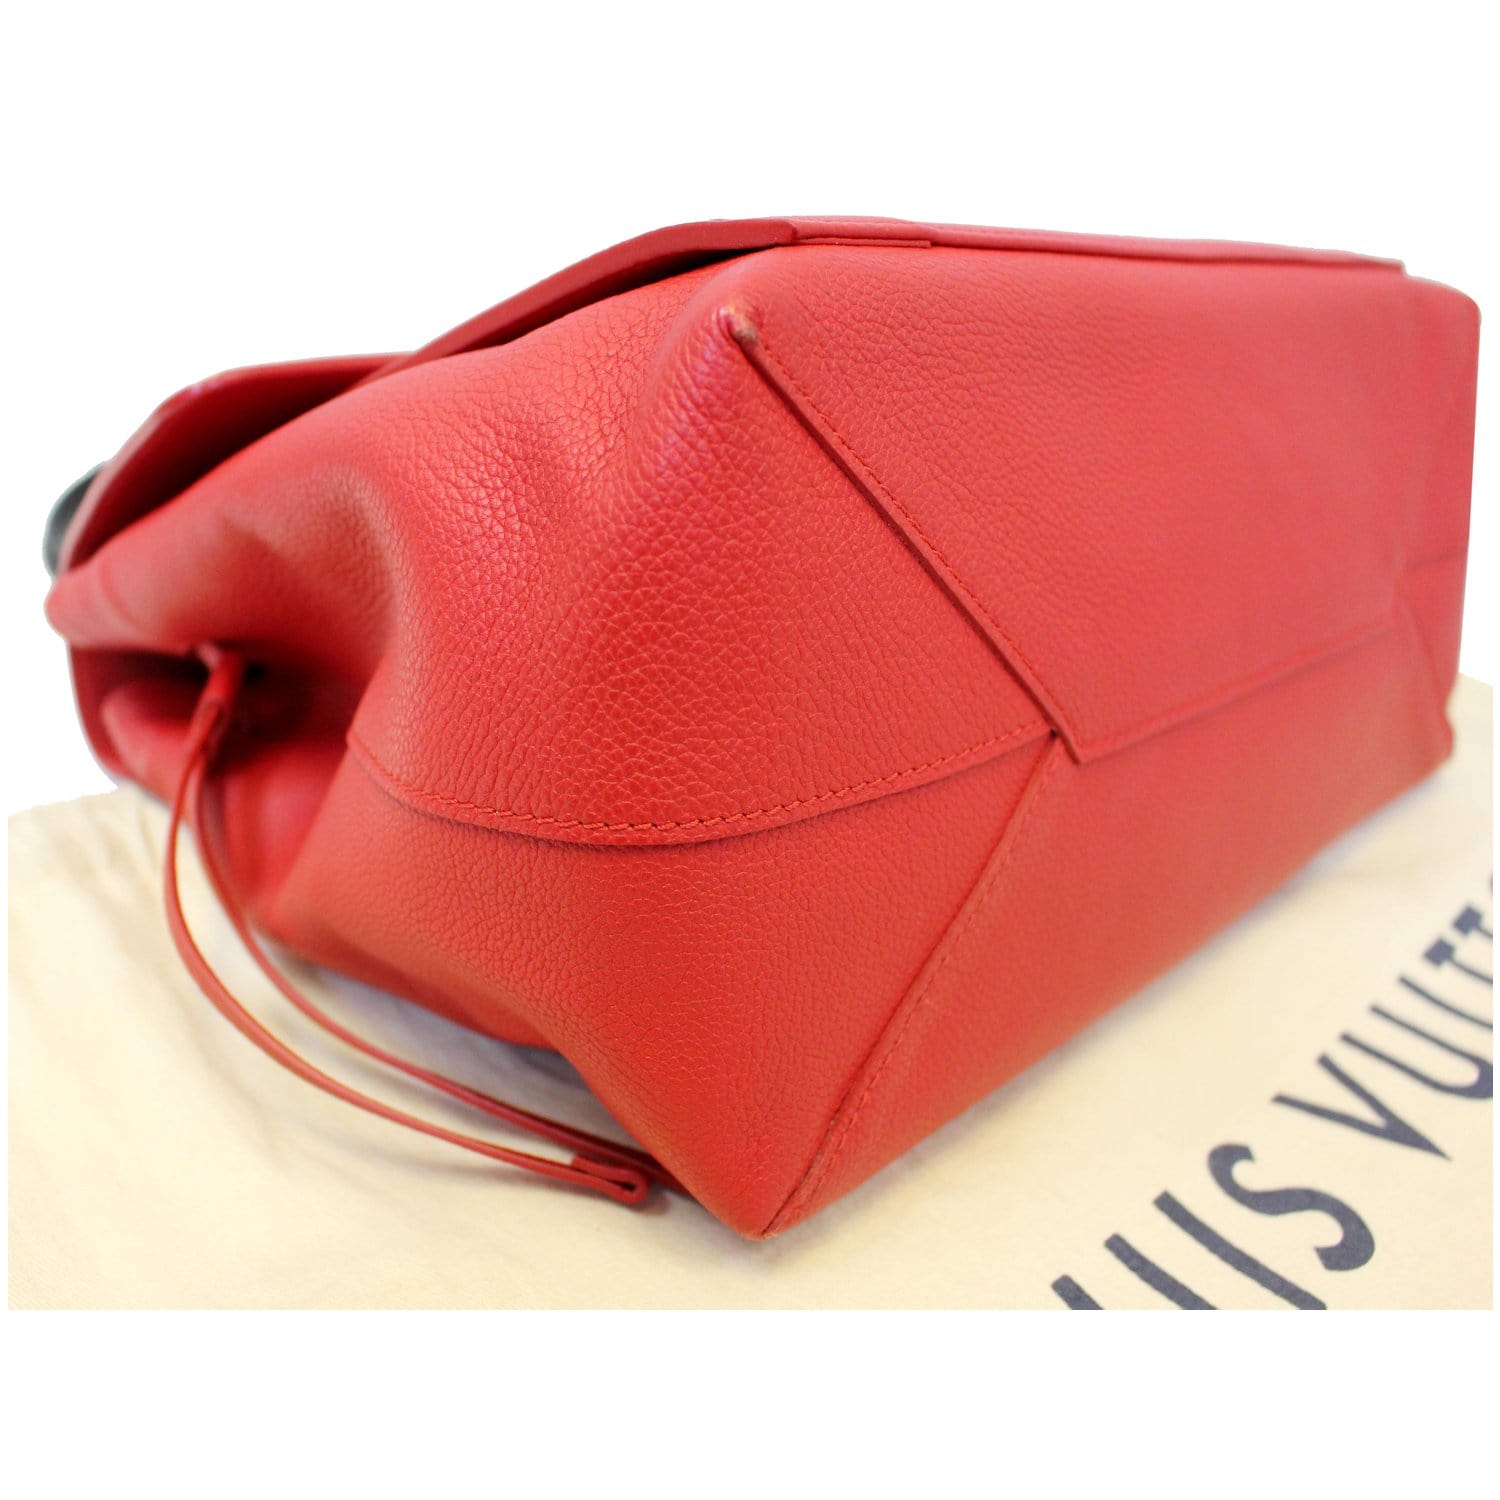 Louis Vuitton Lockme PM Tote Bag | 3D model